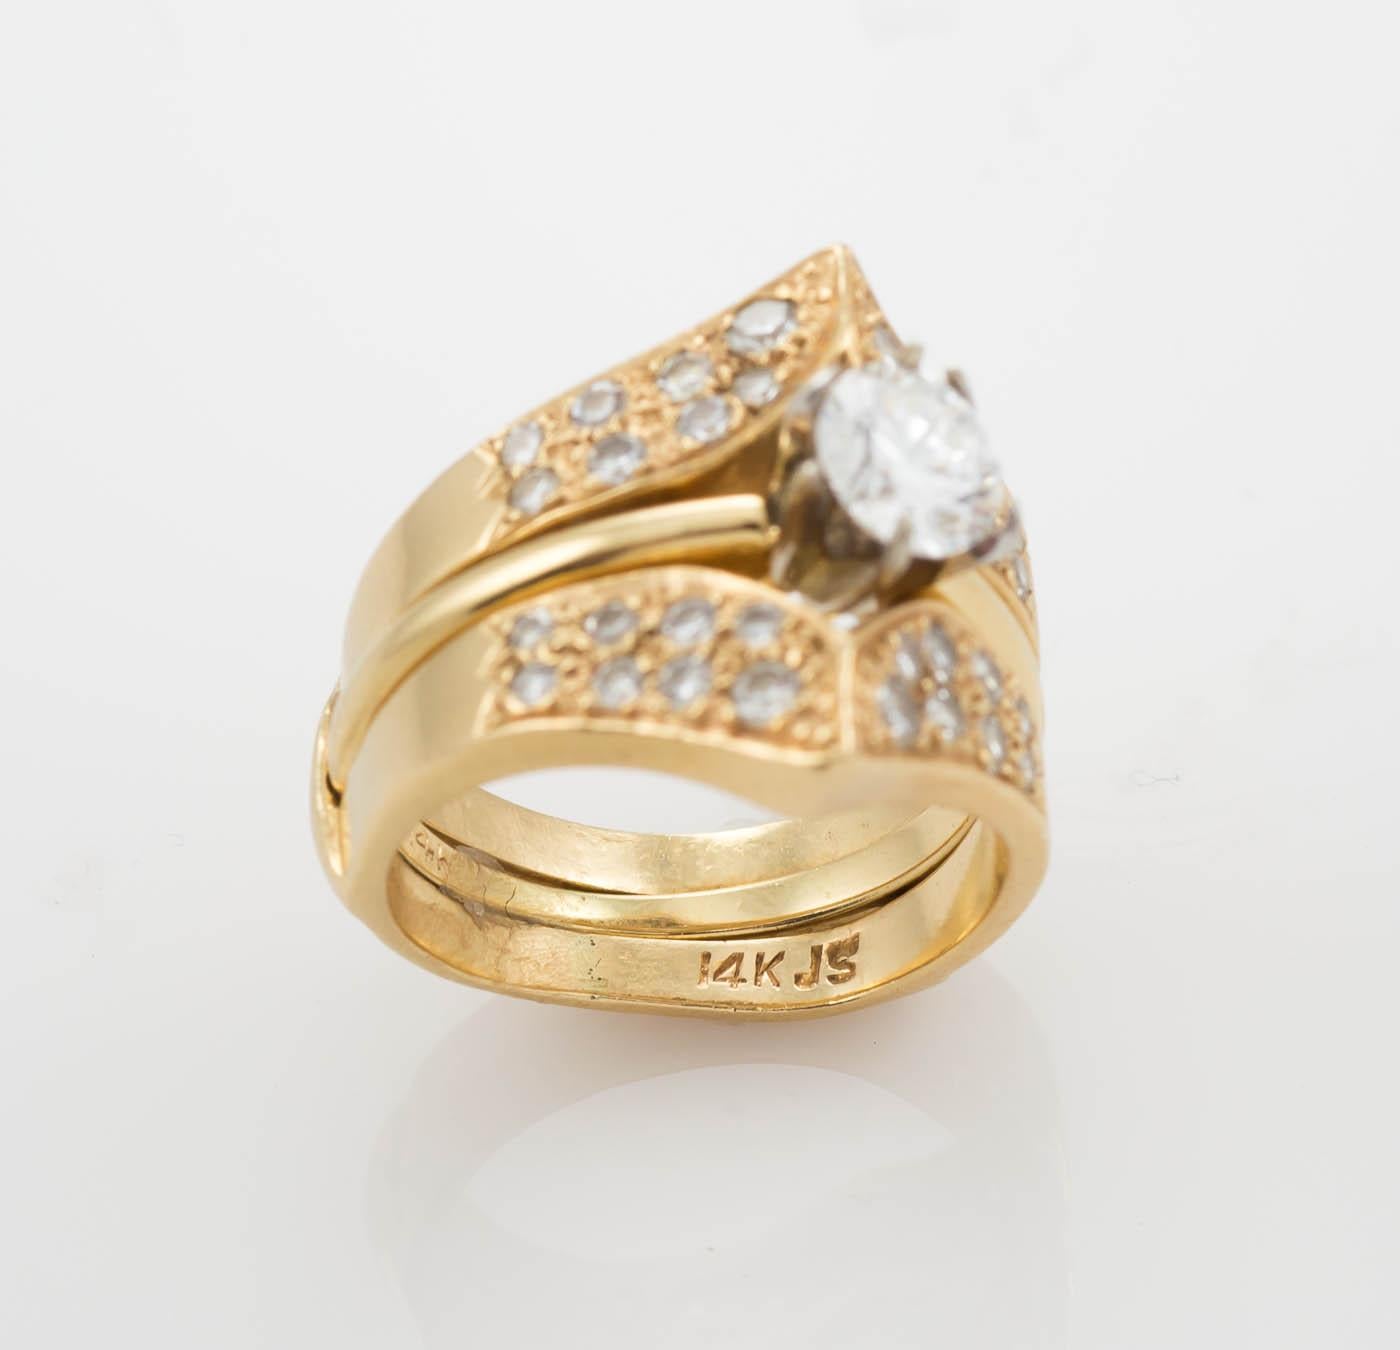 Ladies Diamond Solitaire Ring in 14k Gelbgold.
Stamped 14k und wiegt 2 Gramm.
Der Diamant ist ein runder Brillantschliff, .58 Karat, F Farbe, Vs1 Klarheit, sehr guter Schliff, GIA Report#: 1176461707.
Der Diamant ist in einer Fassung im Tiffany-Stil